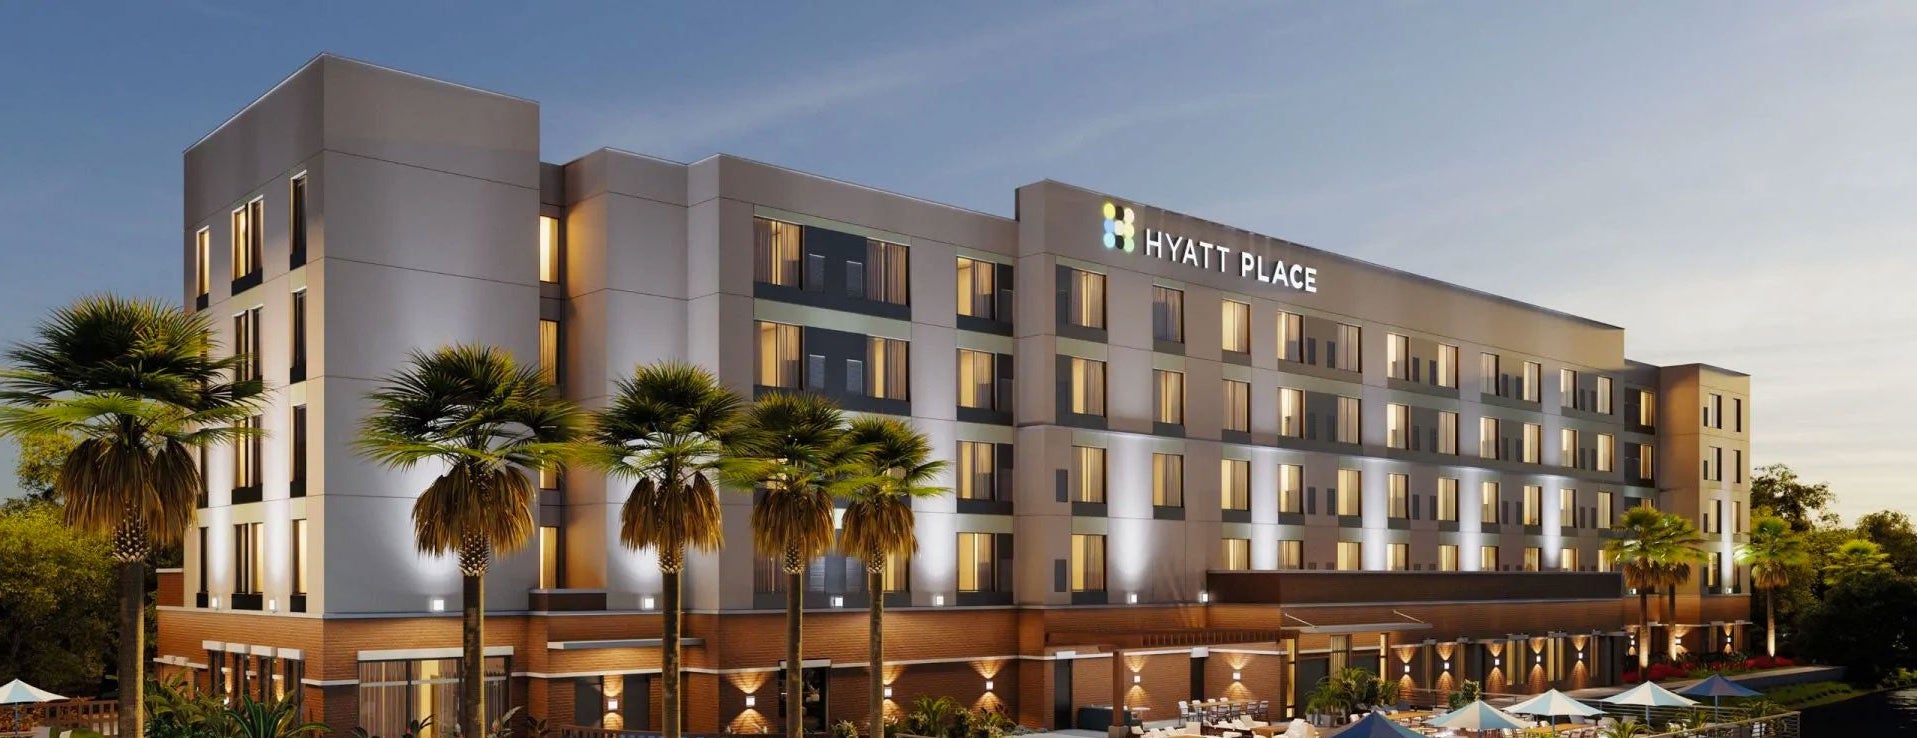 Hyatt Place Jacksonville Featured